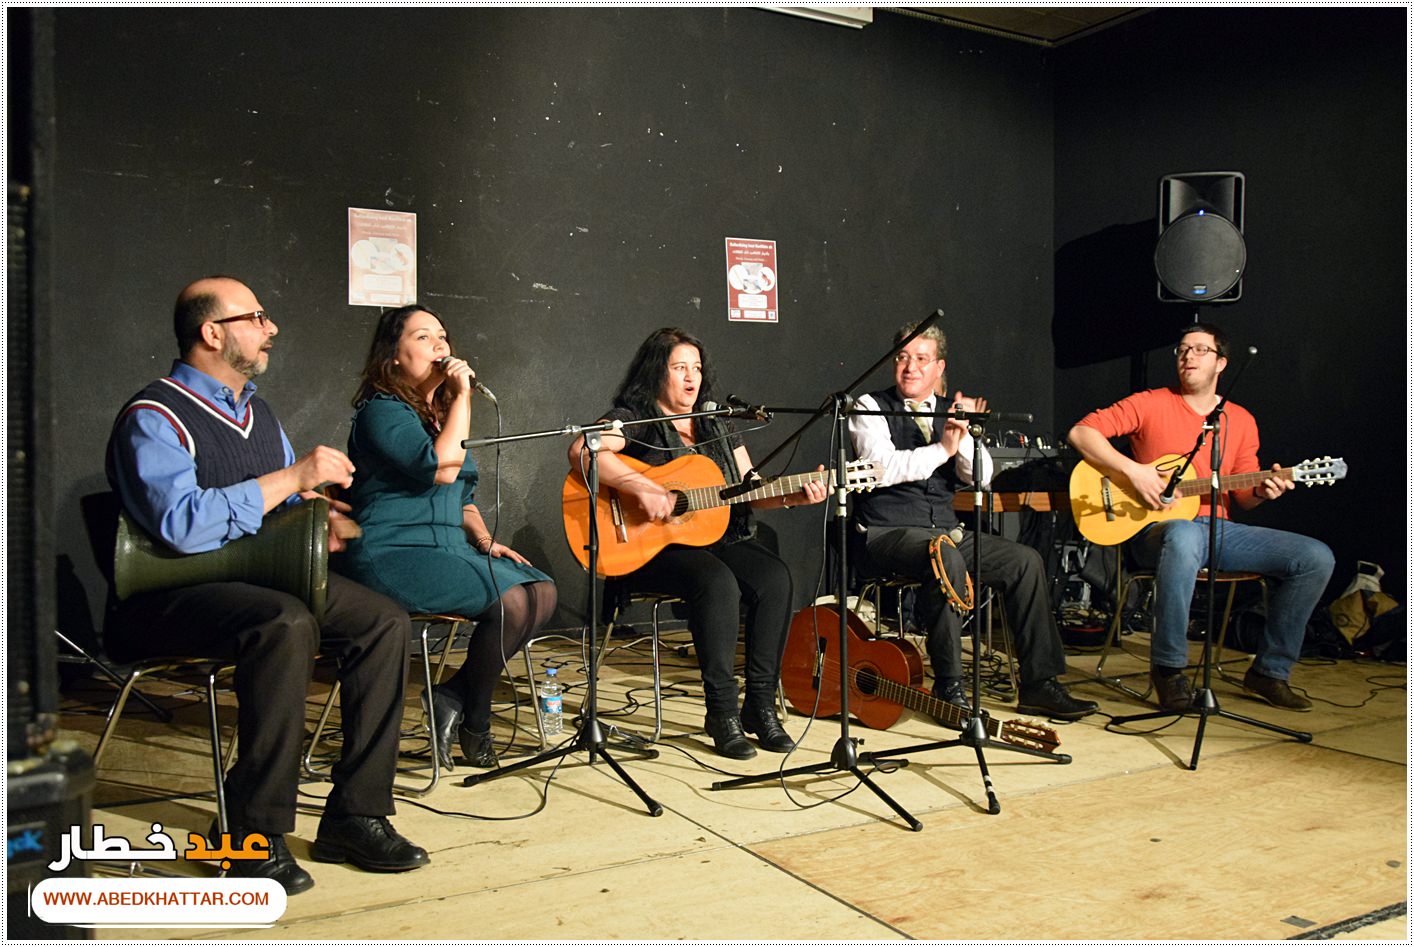 حفل موسيقي فني بدعوة من المعهد الثقافي العربي في برلين